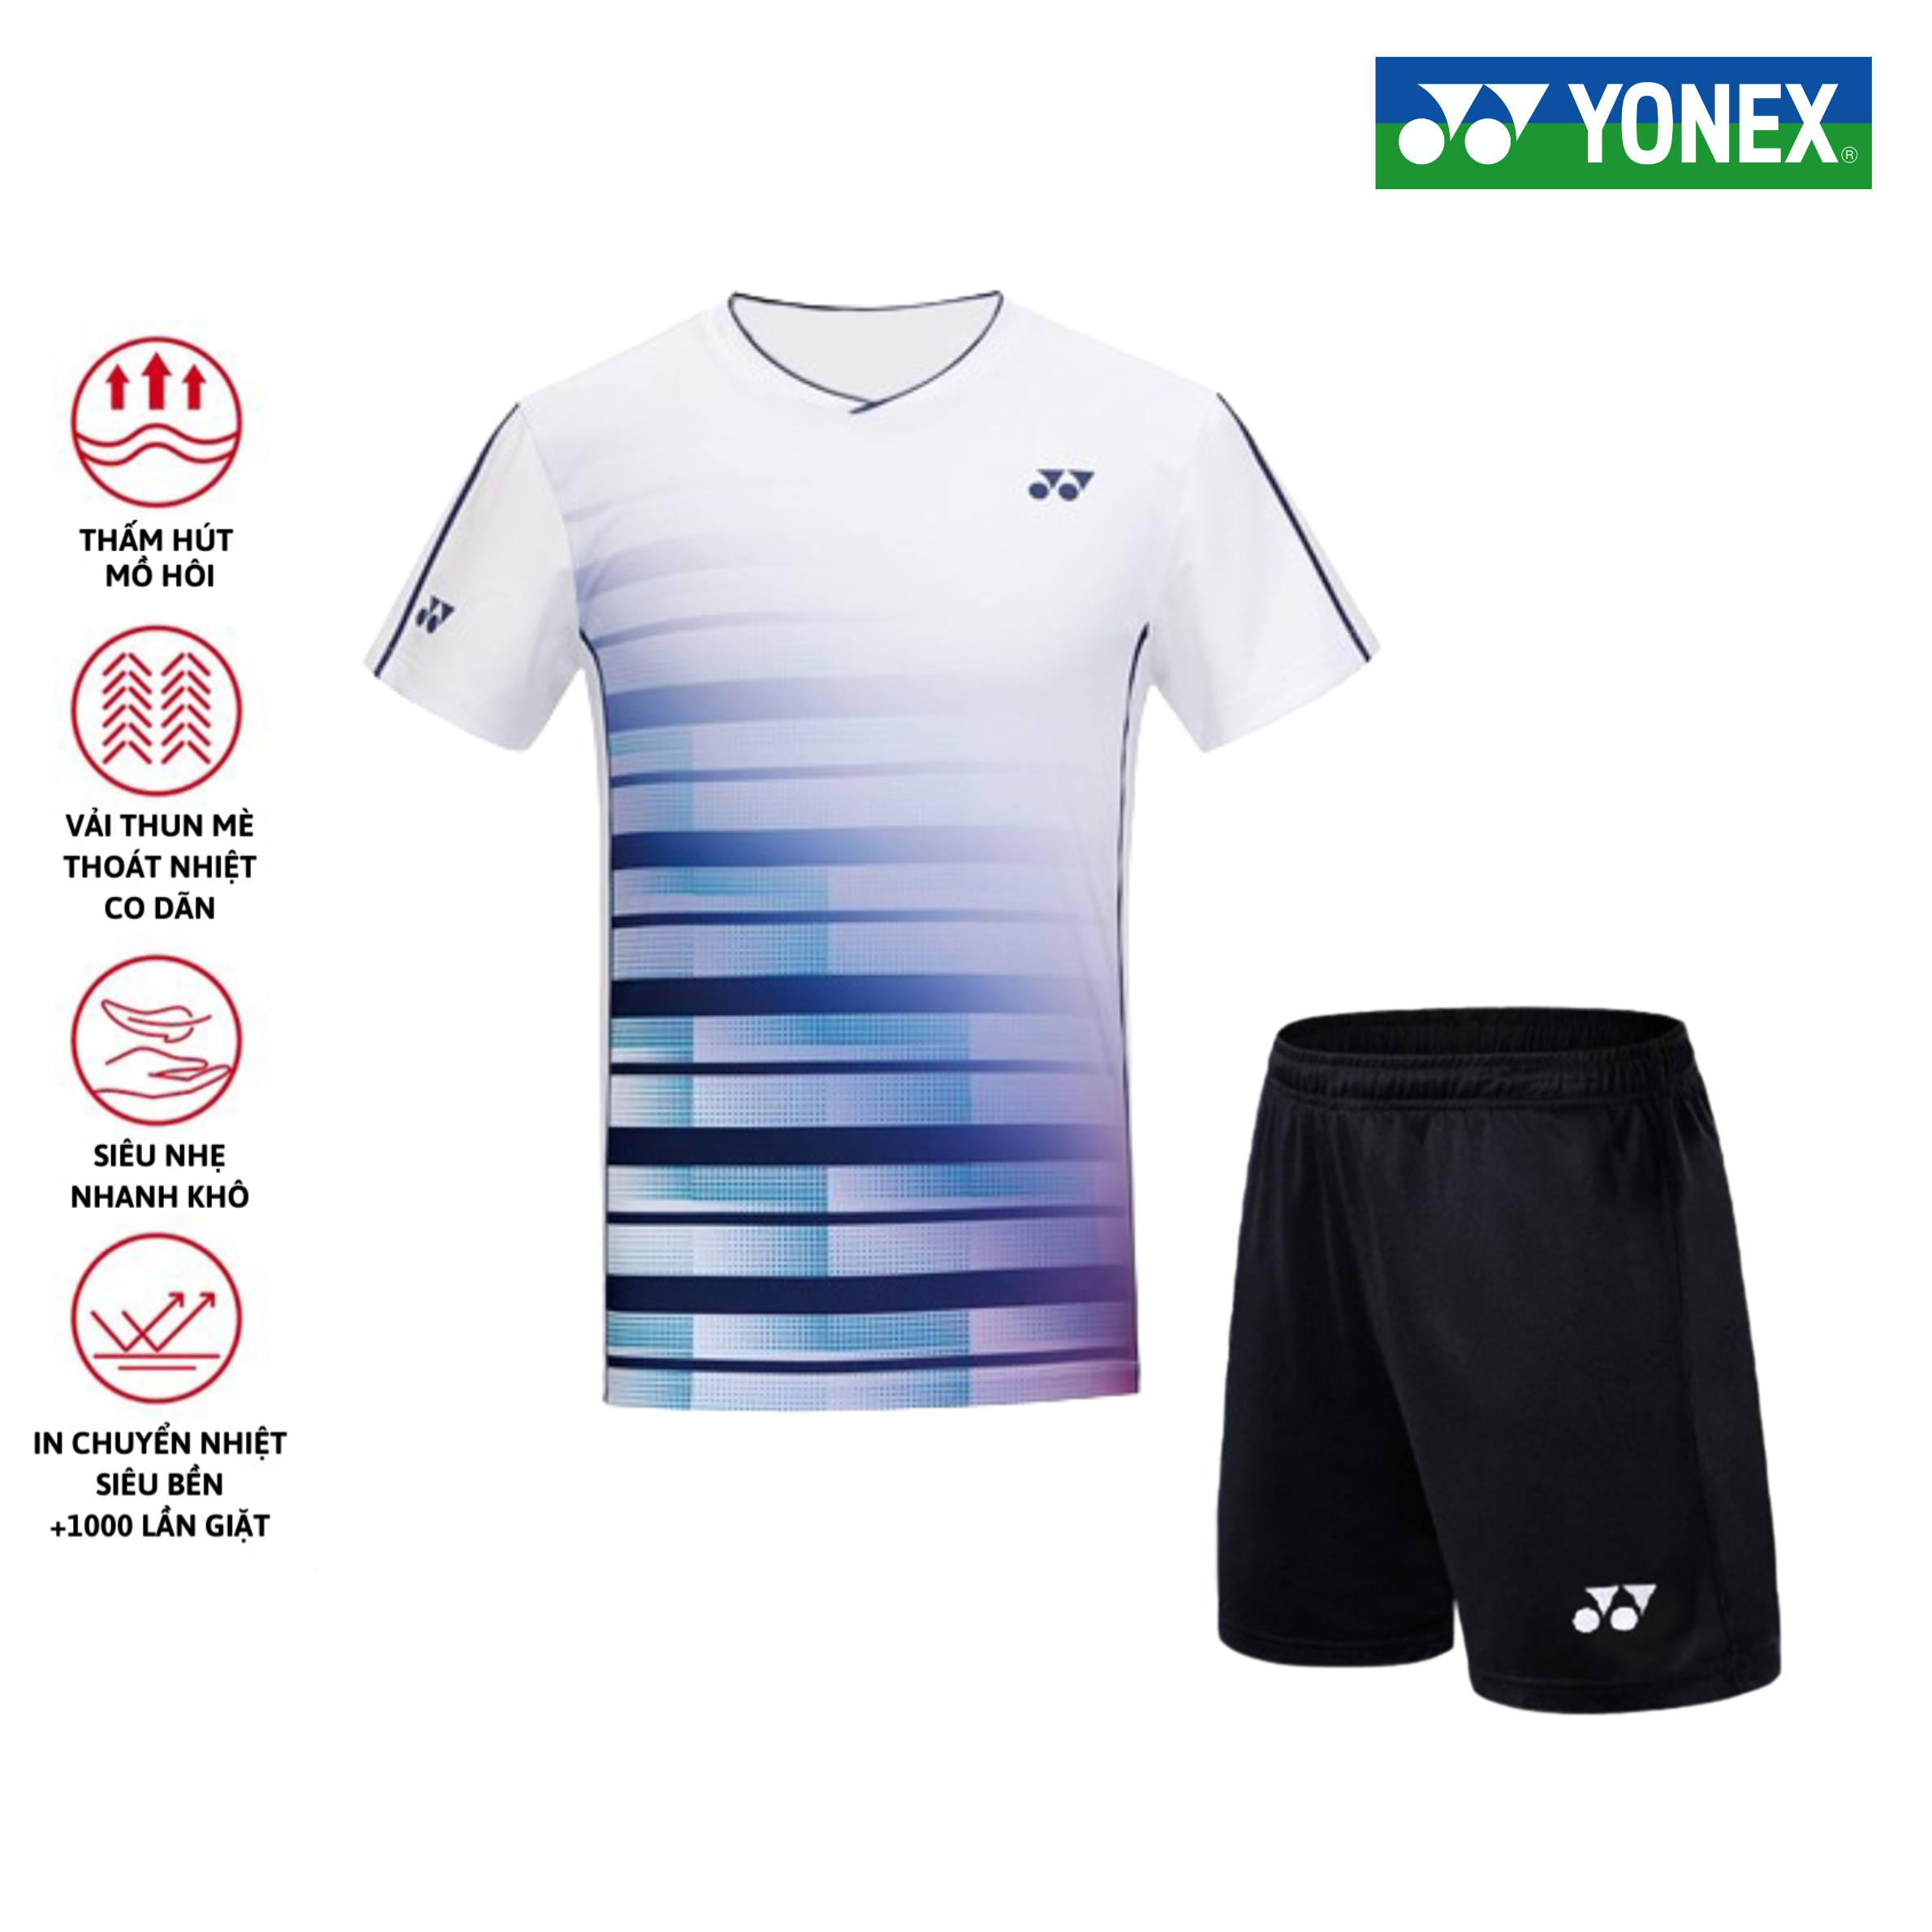 Áo cầu lông, quần cầu lông Yonex chuyên nghiệp mới nhất sử dụng tập luyện và thi đấu cầu lông A451